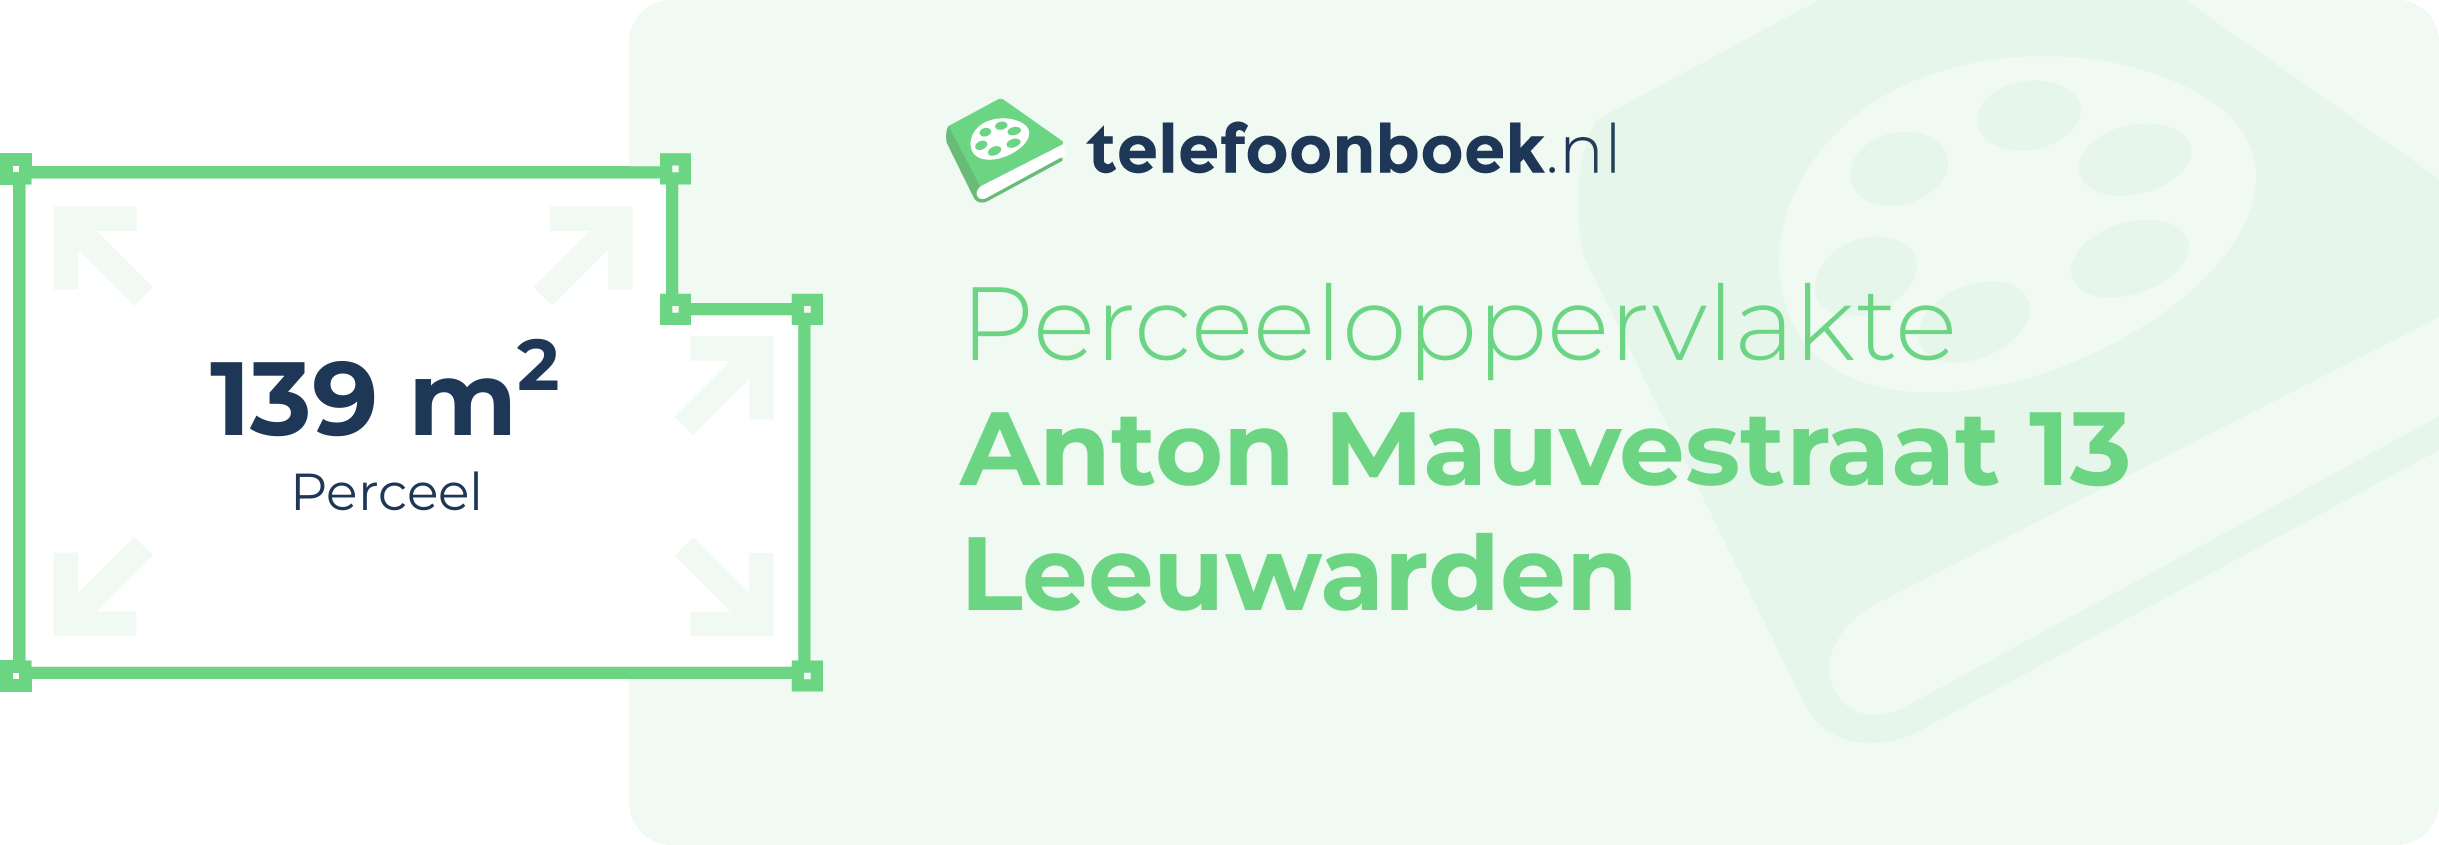 Perceeloppervlakte Anton Mauvestraat 13 Leeuwarden